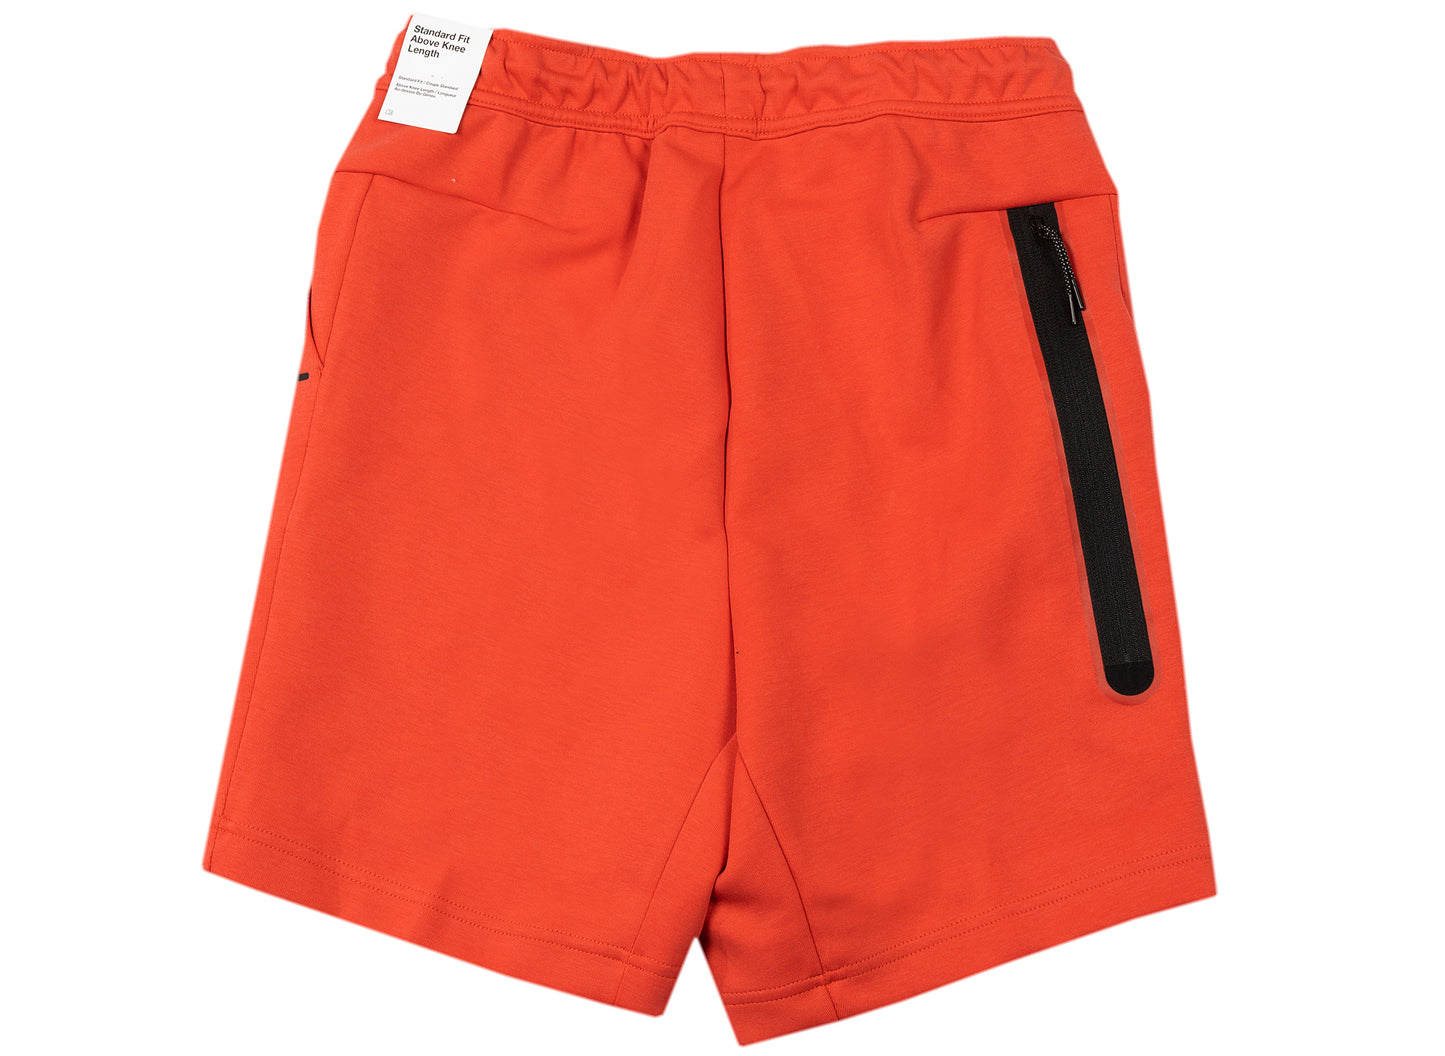 Men's Nike Tech Fleece Shorts in Lobster Red